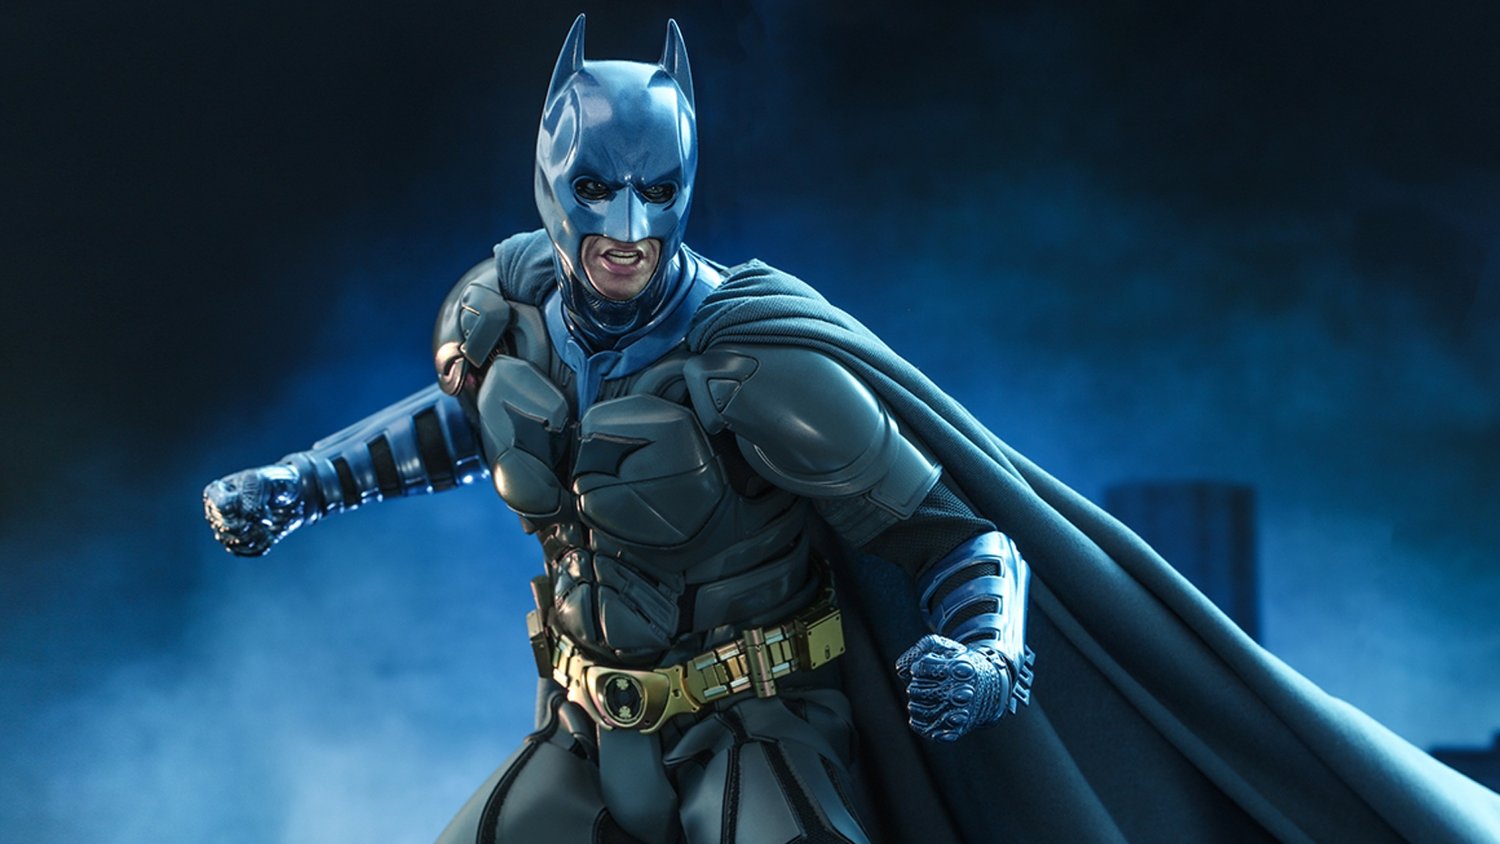 Hot Toys dévoile la nouvelle figurine Batman de Christian Bale avec un costume bleu et gris